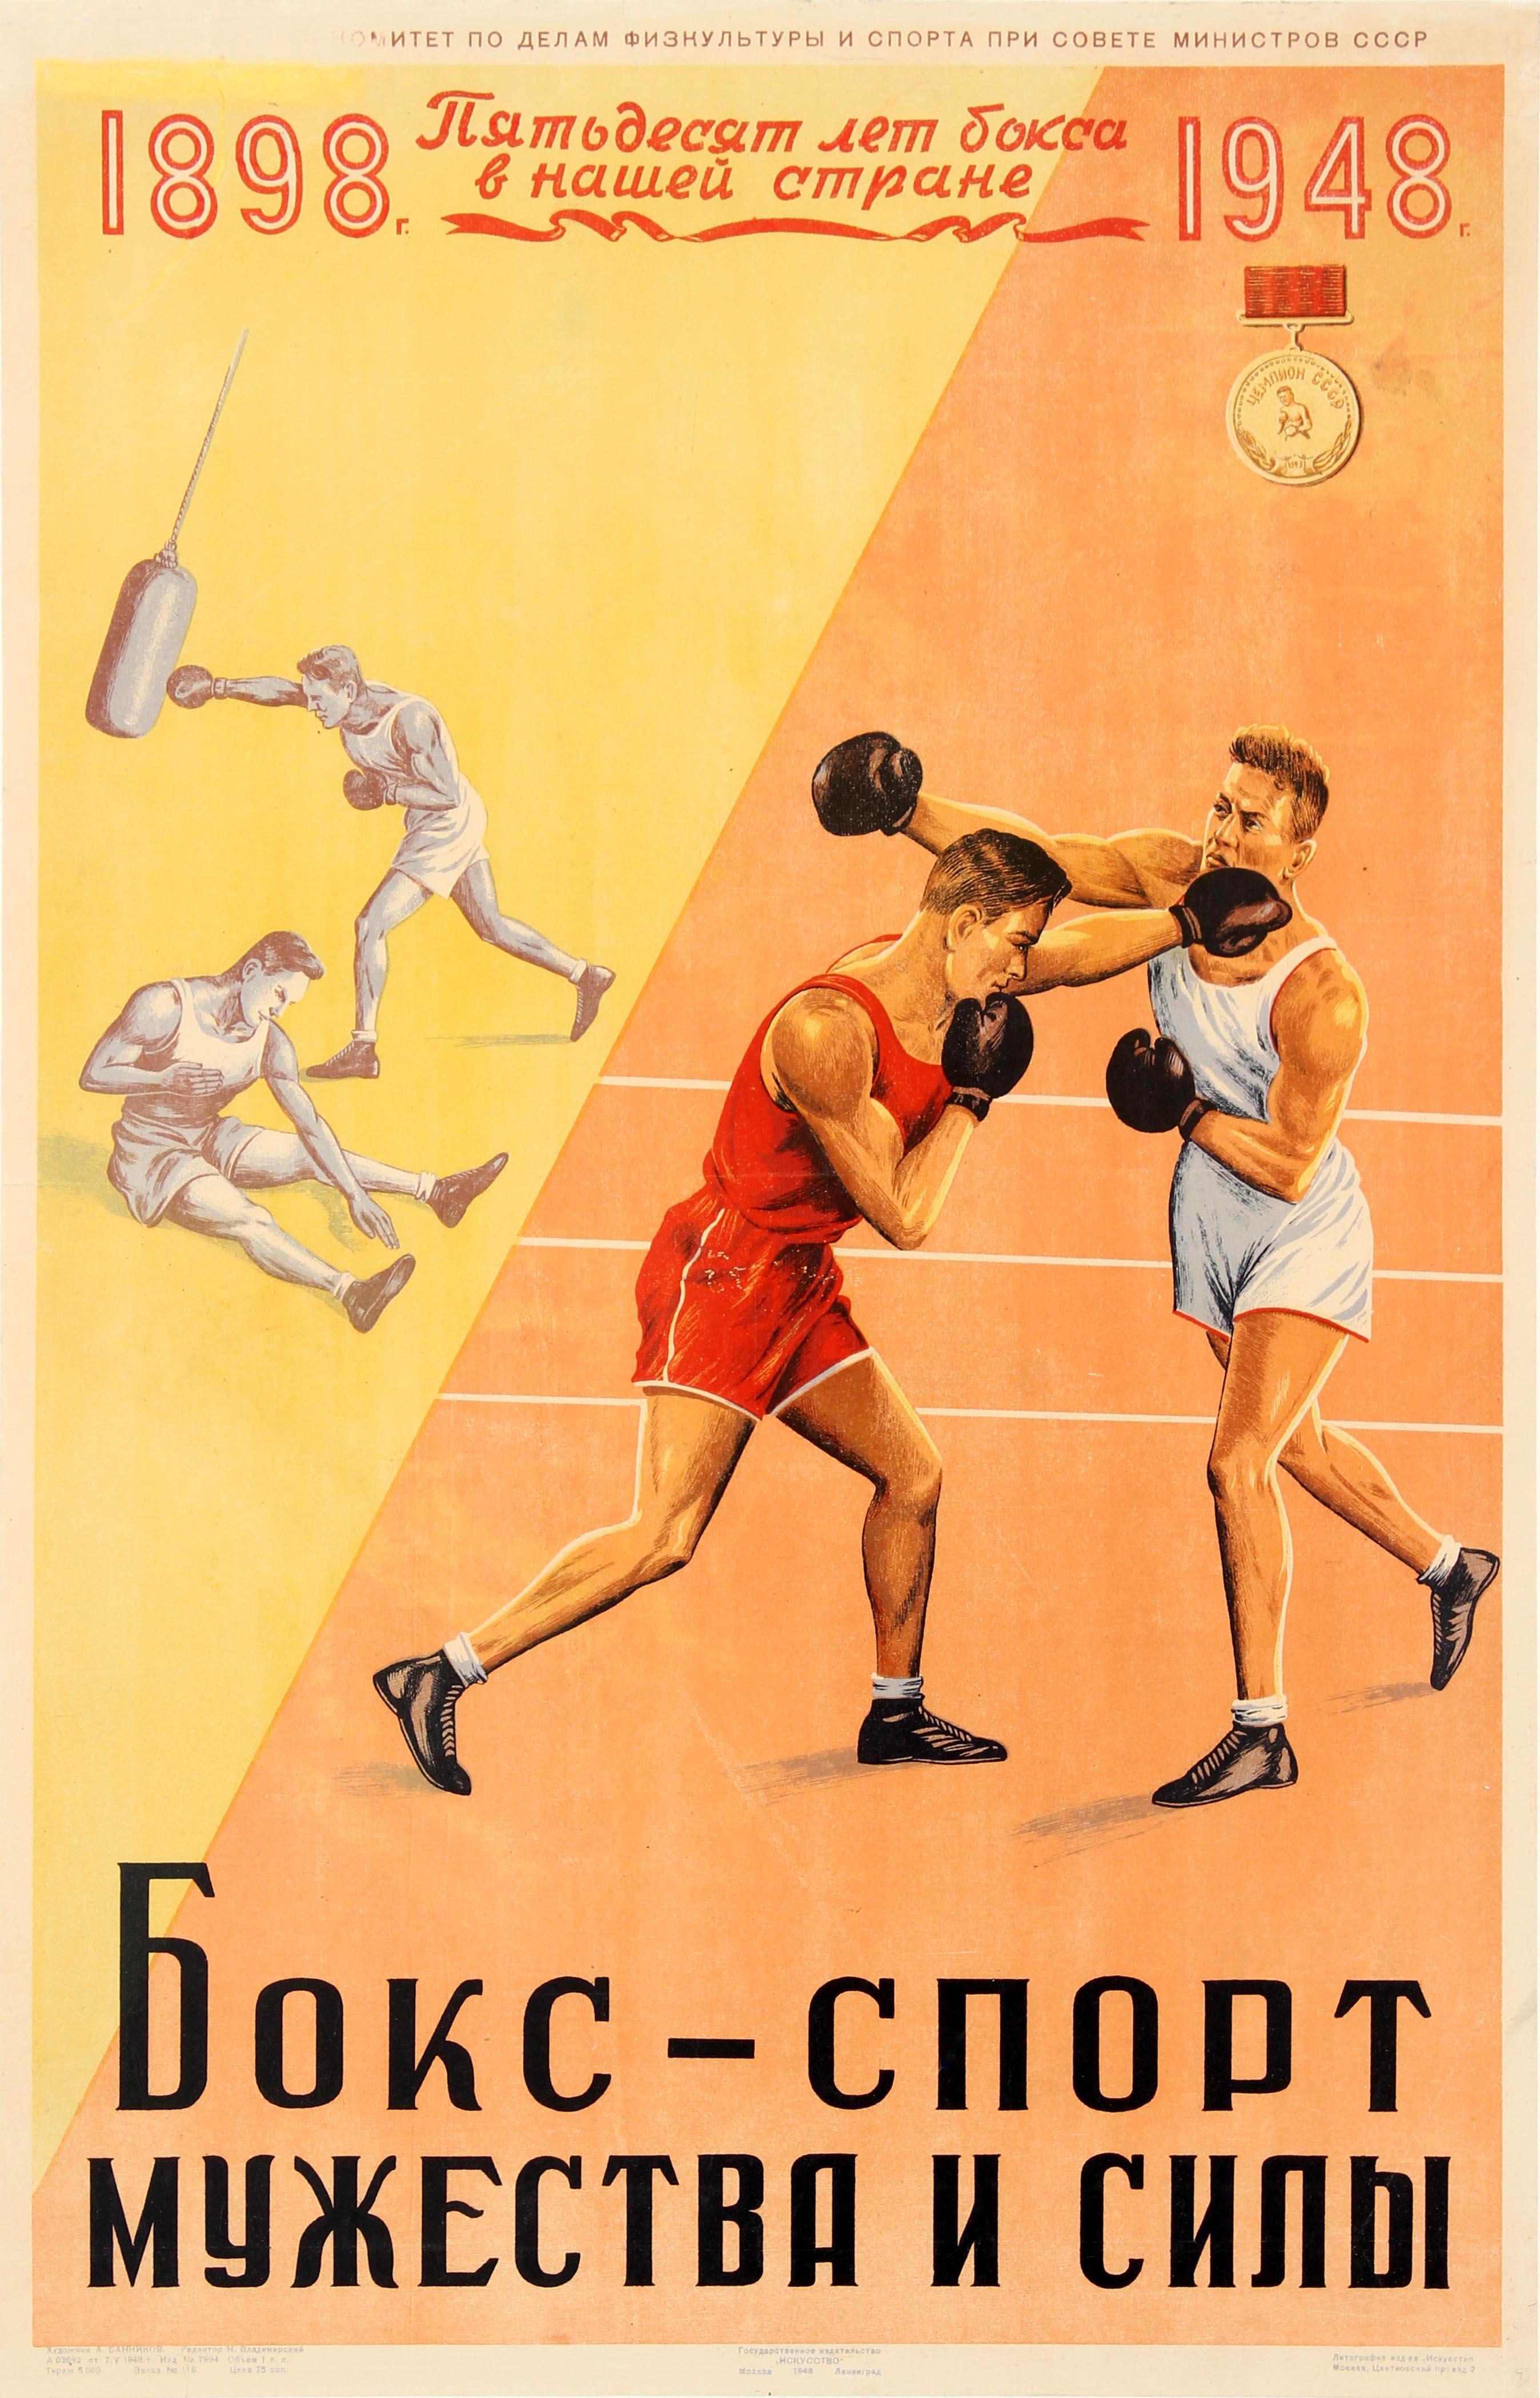 Print A. Bannikov - Affiche de sport soviétique originale vintage pour 50 ans de boxe en Russie, 1898, 1948